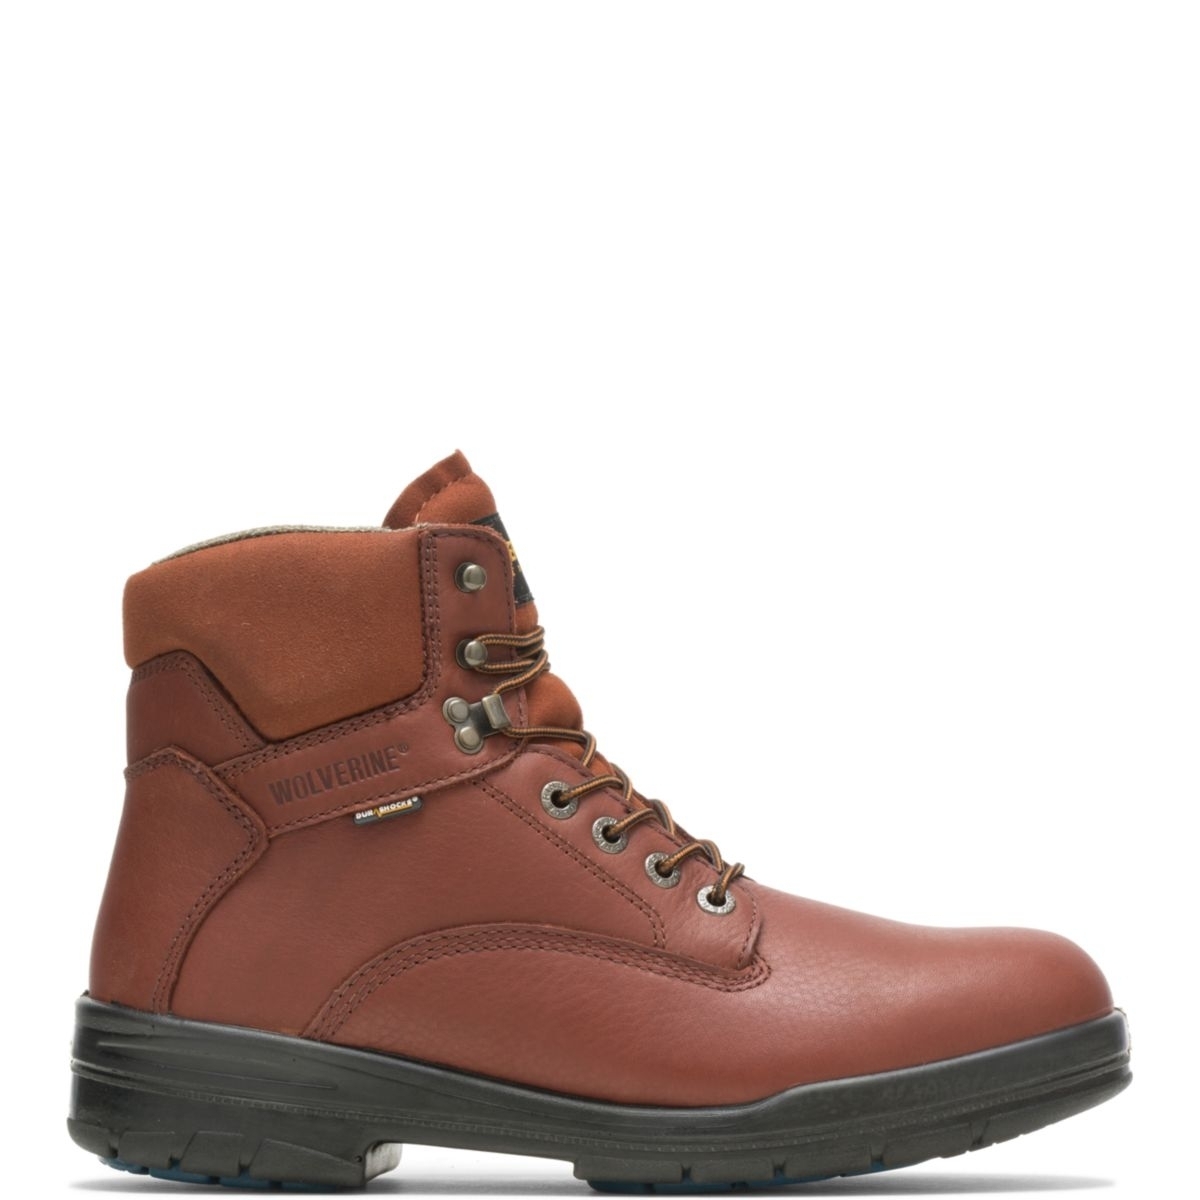 WOLVERINE Men's 6 DuraShocksÂ® Steel Toe Direct-Attach Work Boot Brown - W03120 BROWN - BROWN, 10.5 Wide